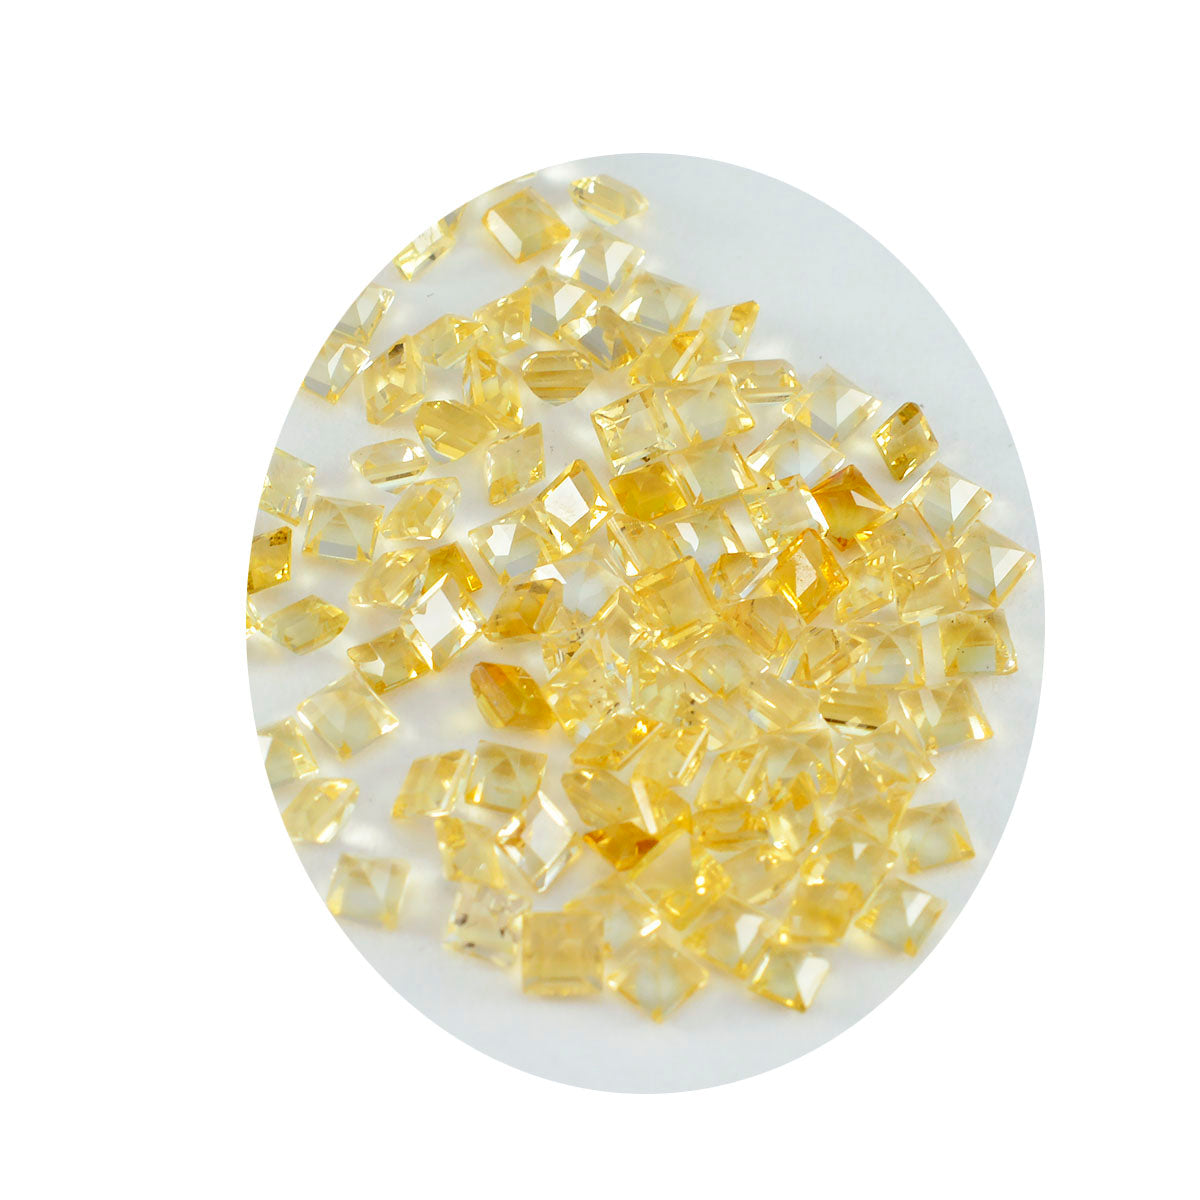 riyogems 1 шт. натуральный желтый цитрин ограненный 5x5 мм квадратной формы красивый качественный камень